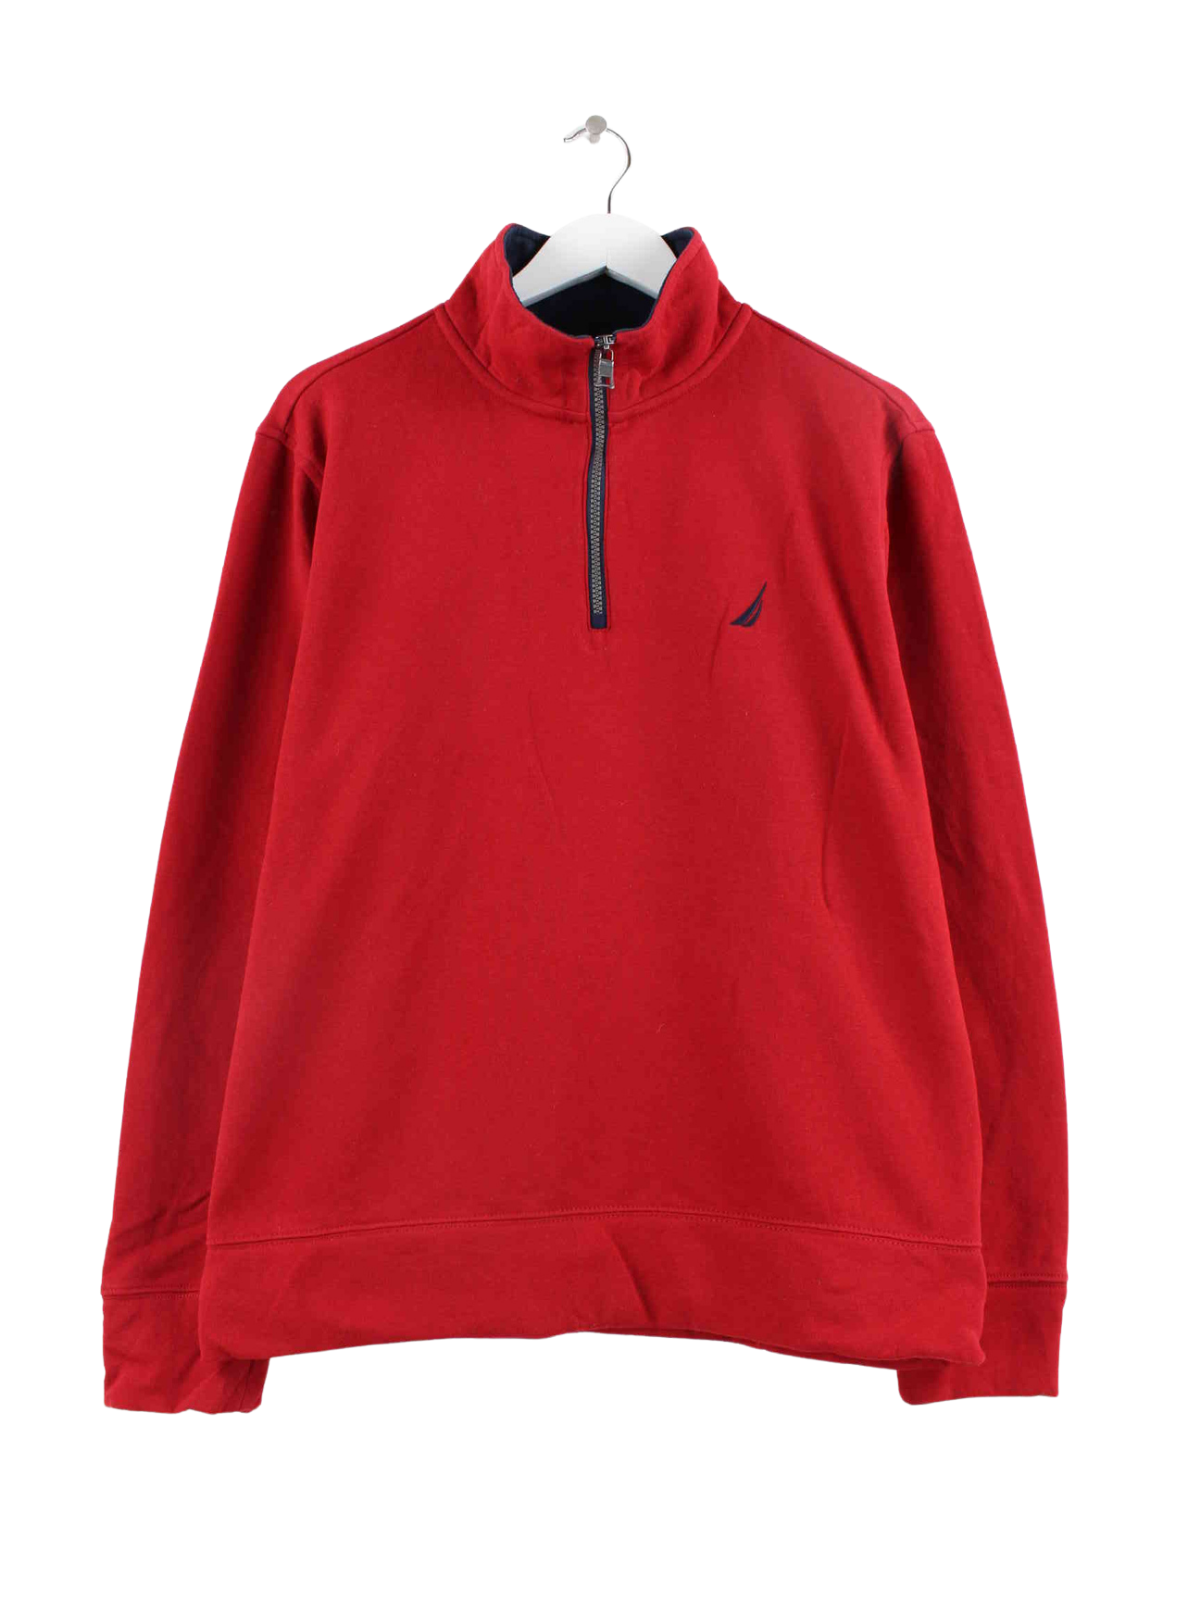 Norfolk Quarter Zip Sweatshirt - Red